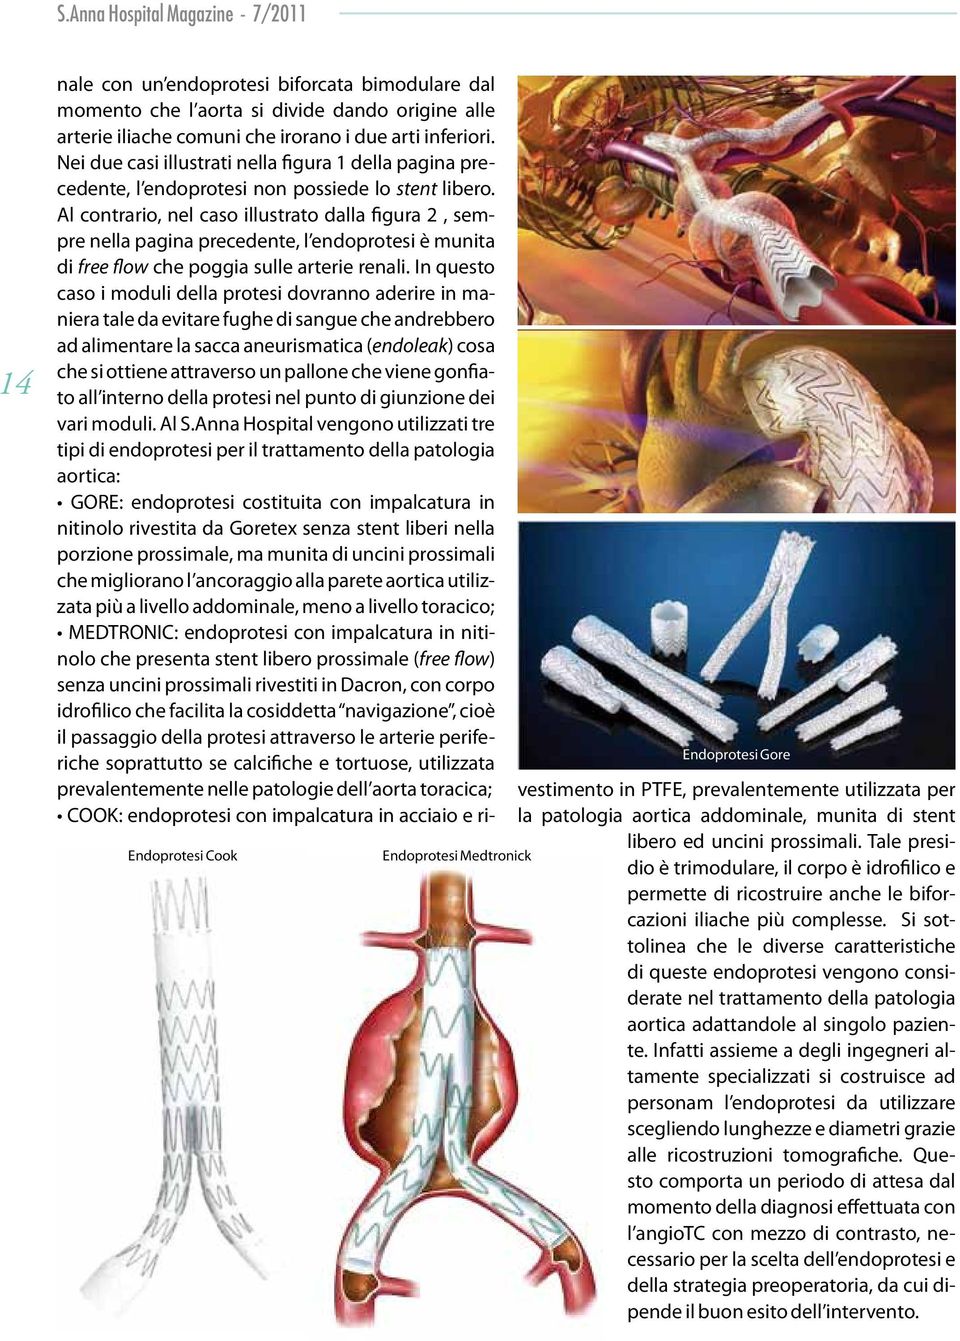 Al contrario, nel caso illustrato dalla figura 2, sempre nella pagina precedente, l endoprotesi è munita di free flow che poggia sulle arterie renali.